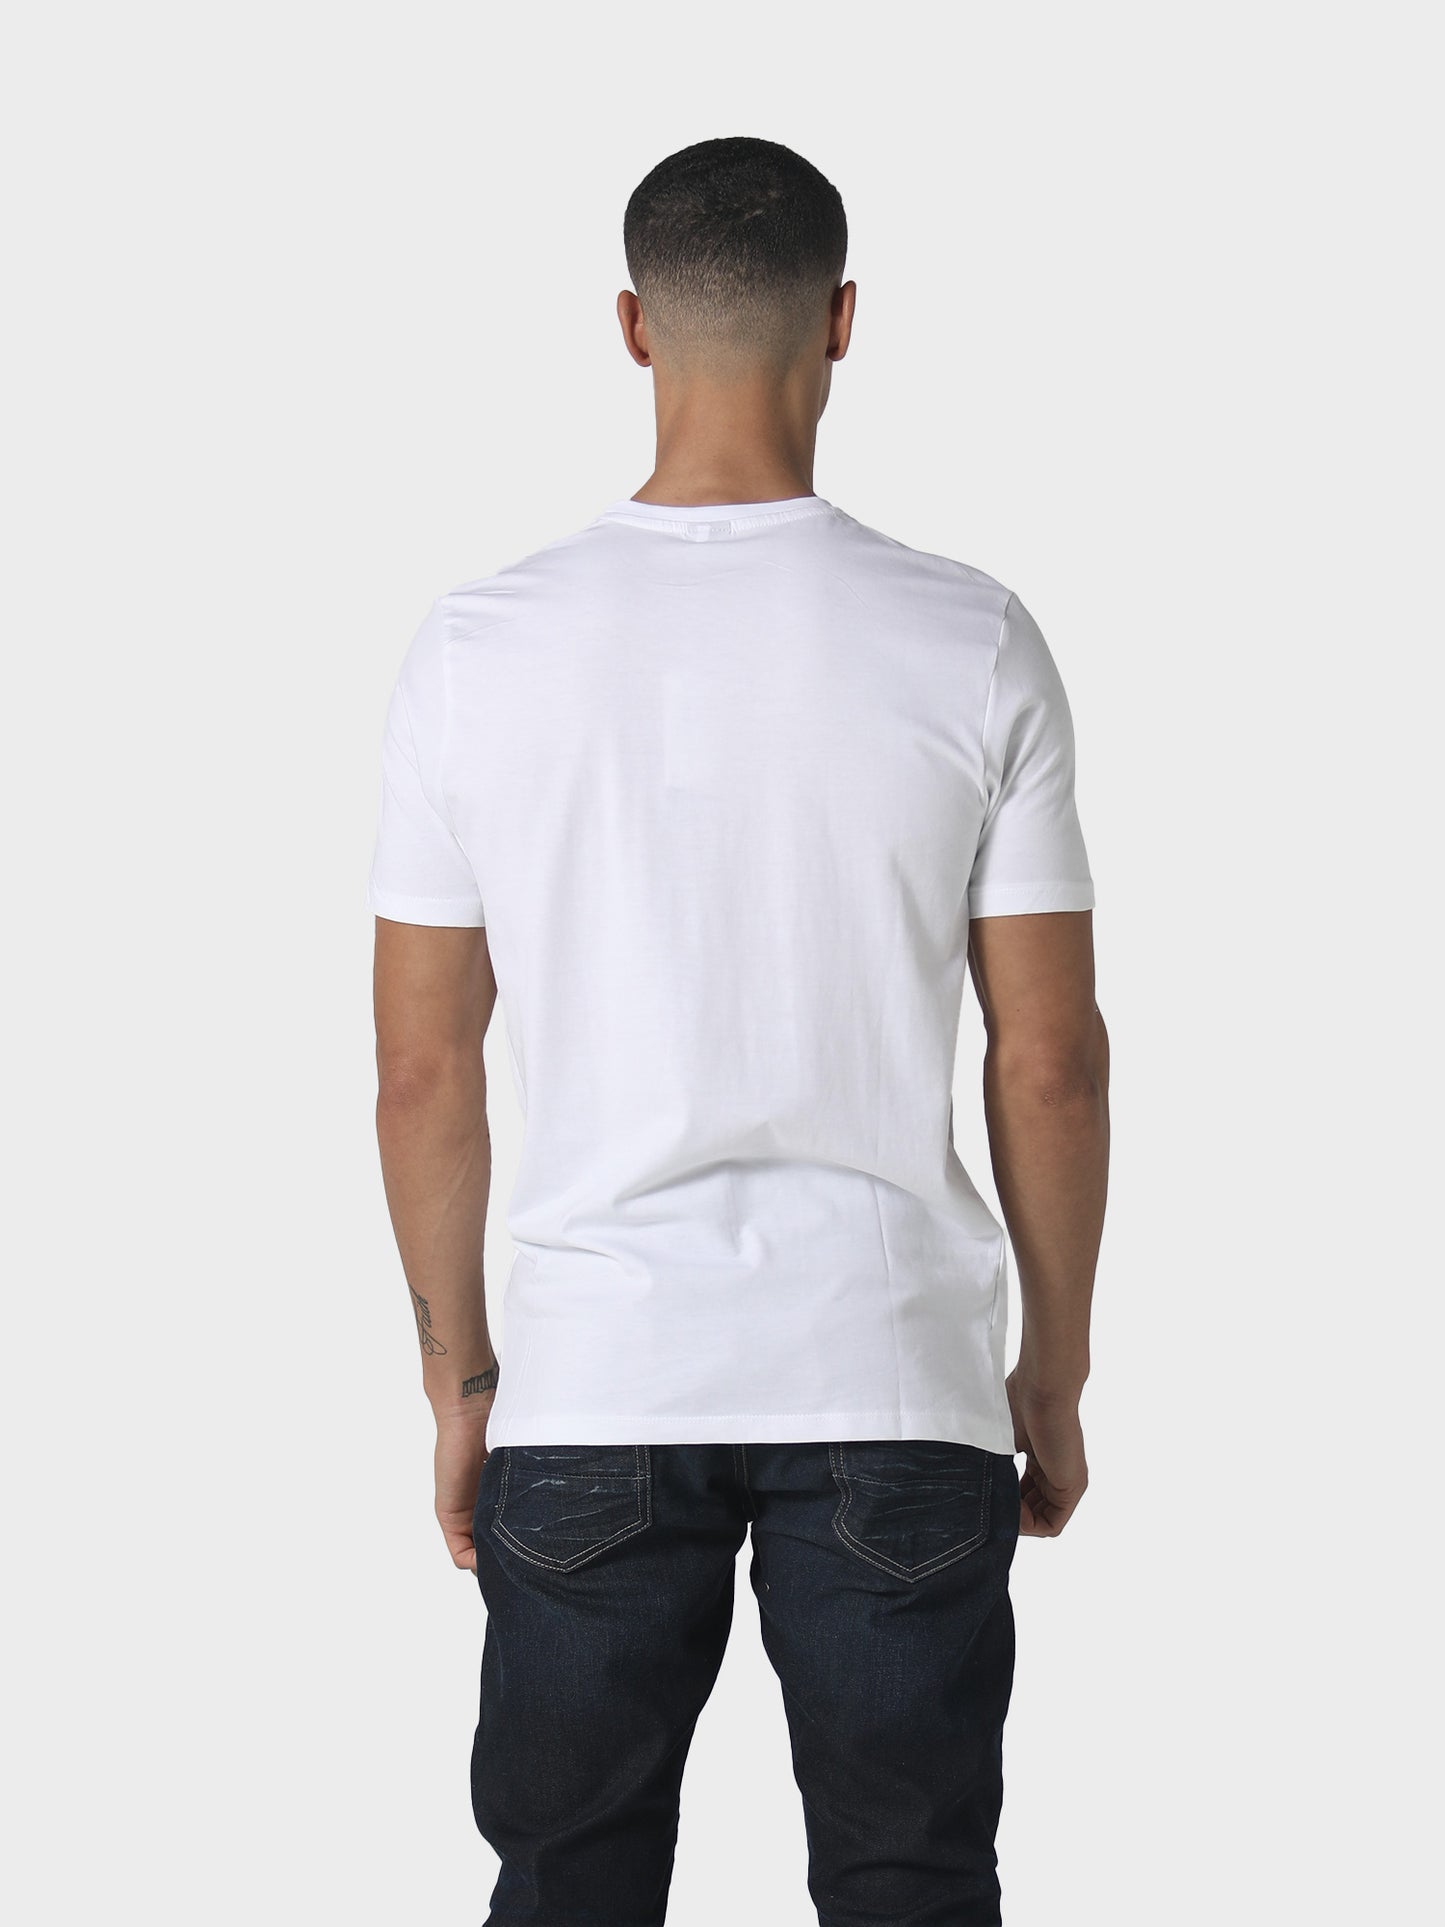 Reyser White T-Shirt